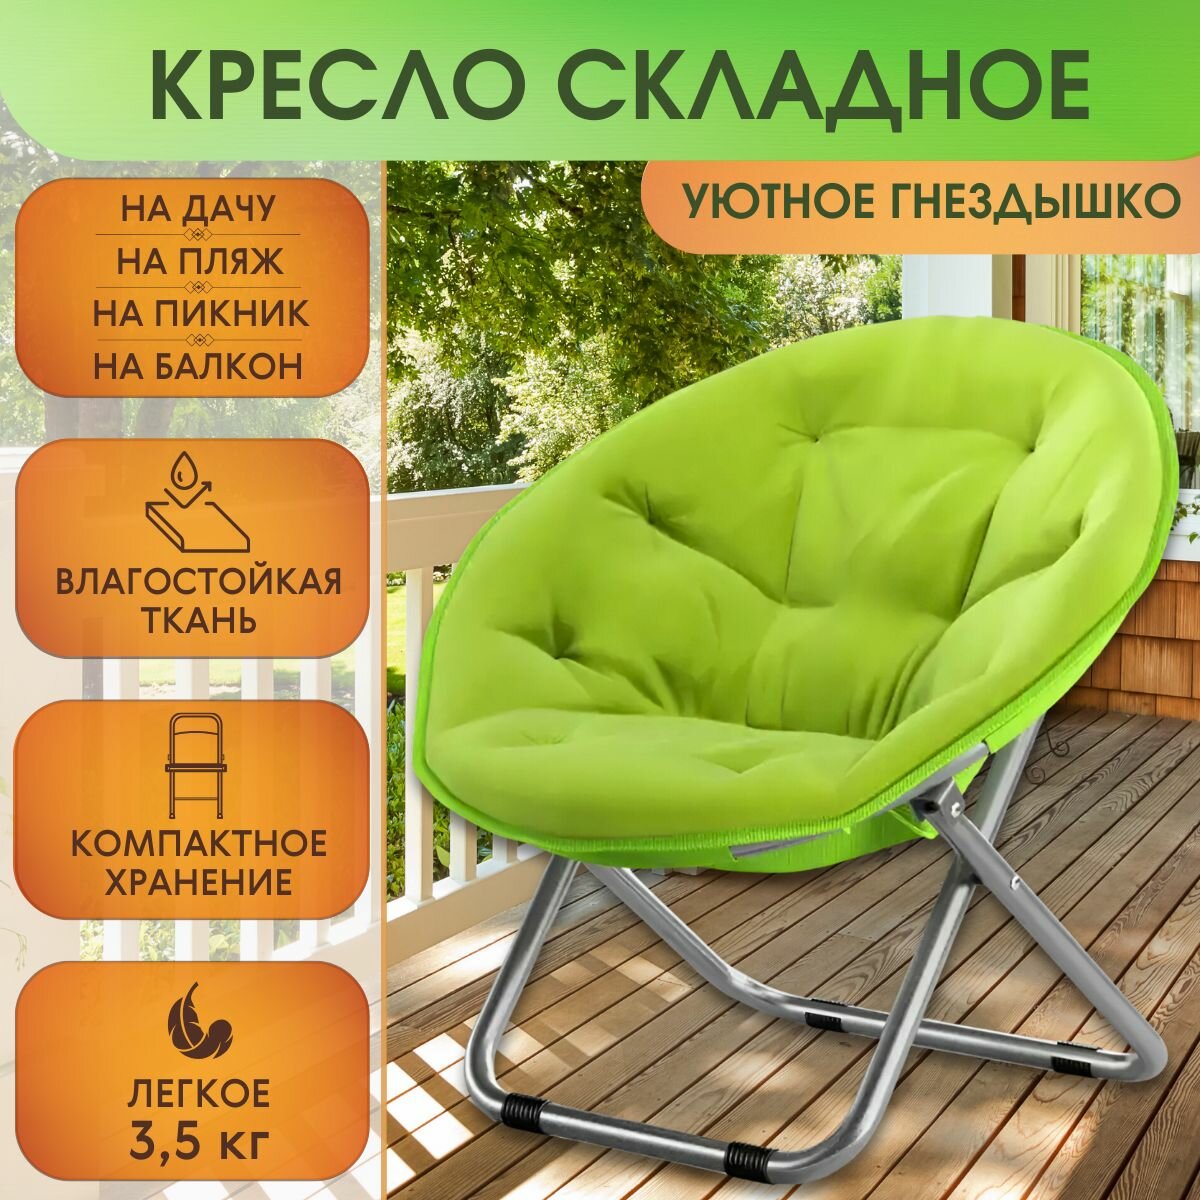 Кресло складное туристическое зеленое, на дачу, на пляж, на пикник, на балкон, кресло-шезлонг, до 120 кг, уютное и большое